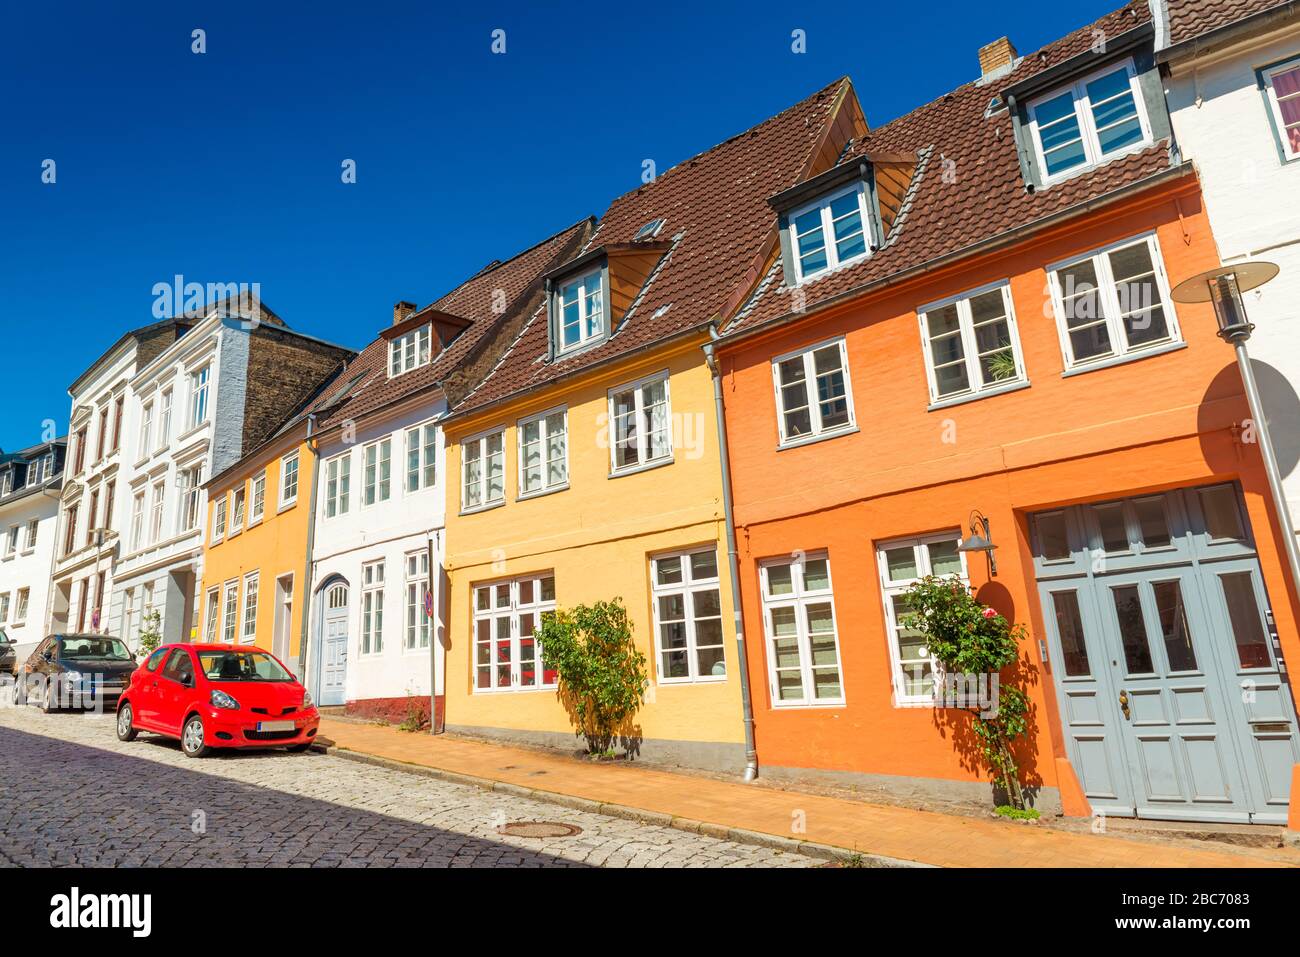 La rue vide d'une petite ville d'Europe. Dans la couleur des maisons historiques de style danois-allemand traditionnel. Flensburg, Allemagne Banque D'Images